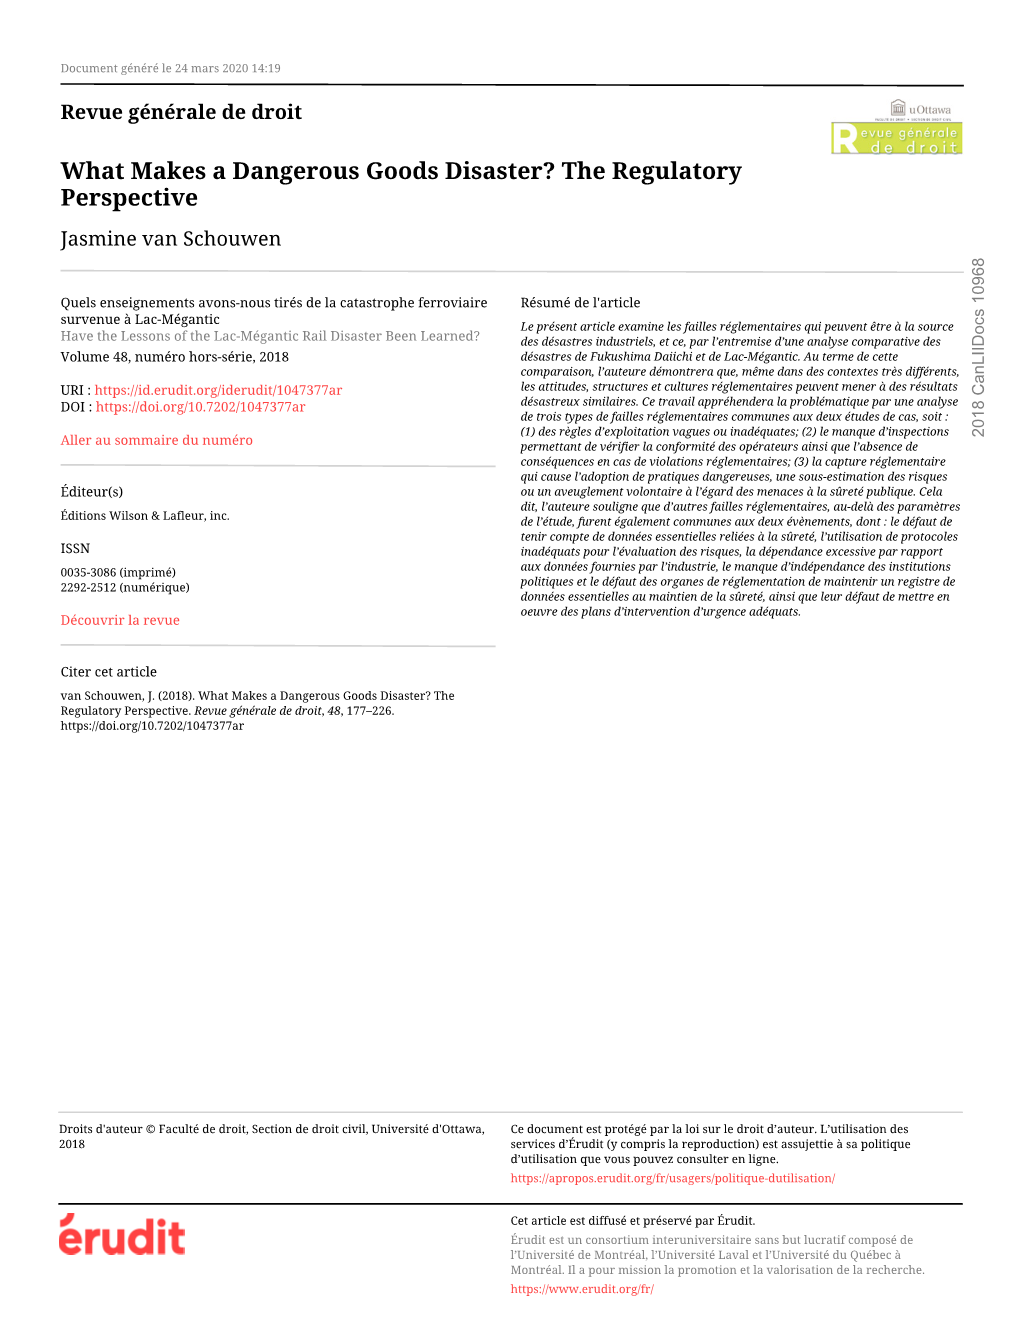 What Makes a Dangerous Goods Disaster? the Regulatory Perspective Jasmine Van Schouwen